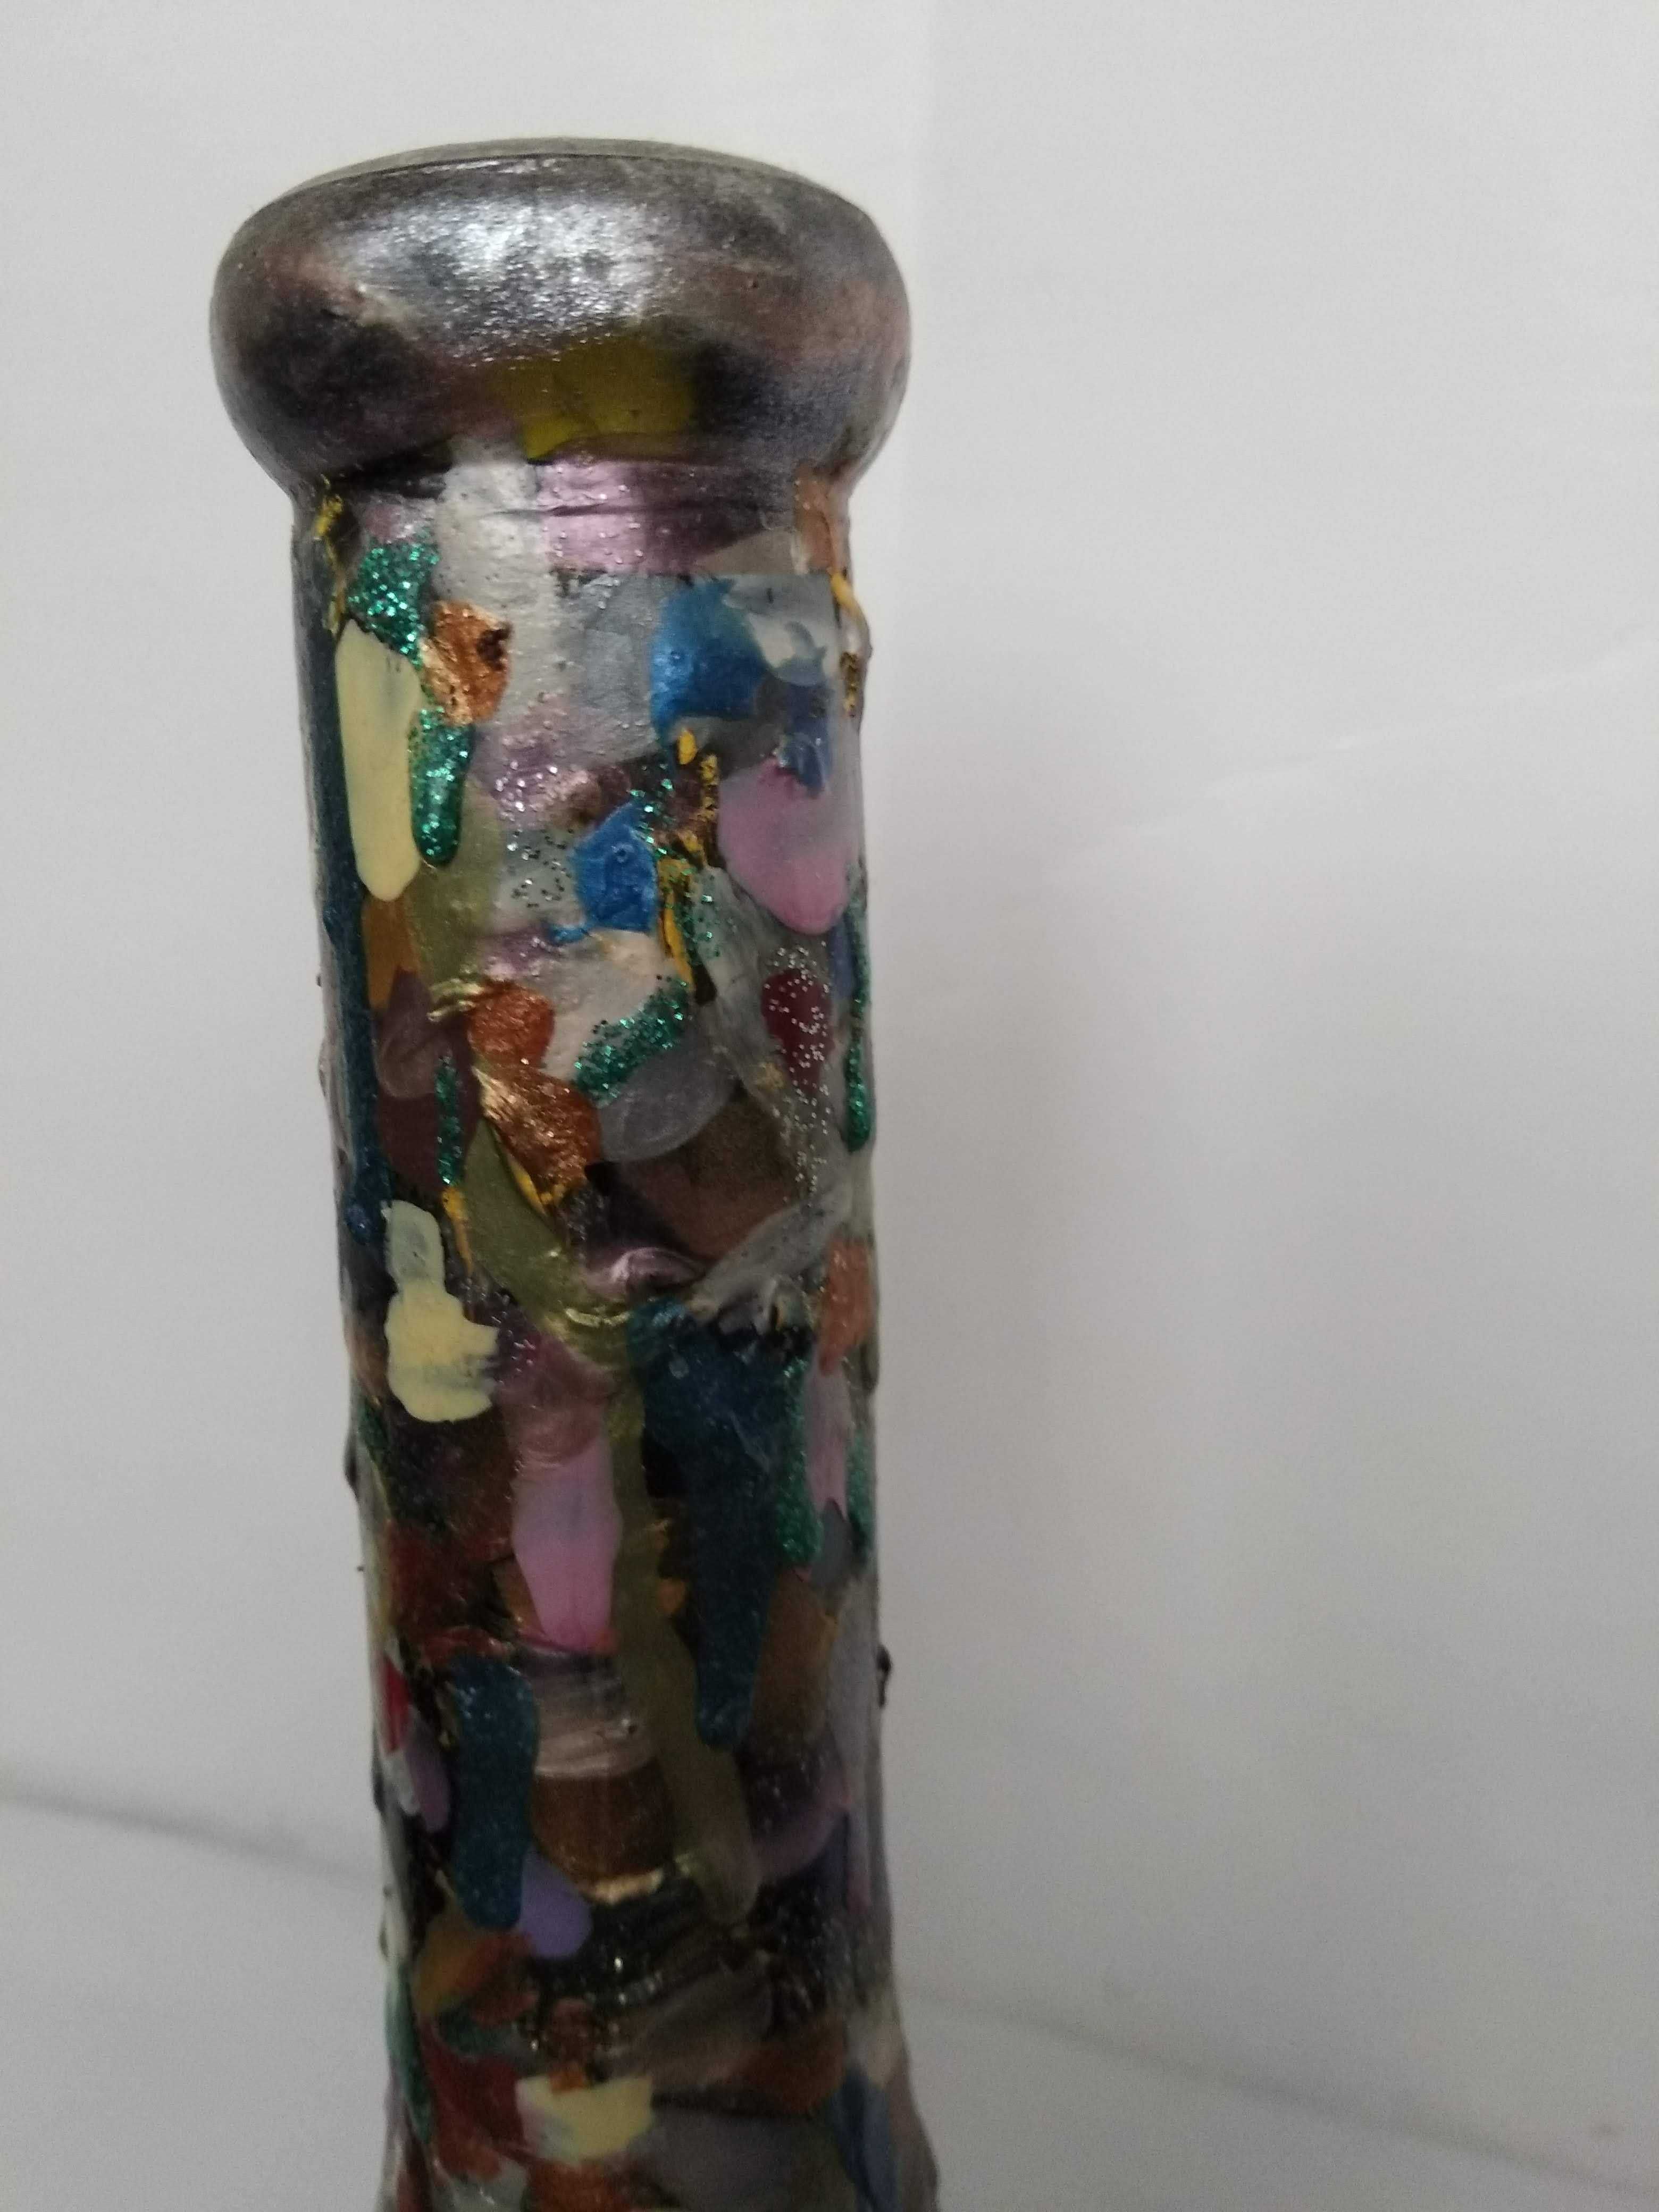 Бутылка роспись по стеклу ручная работа высота 31,5 см абстракционизм